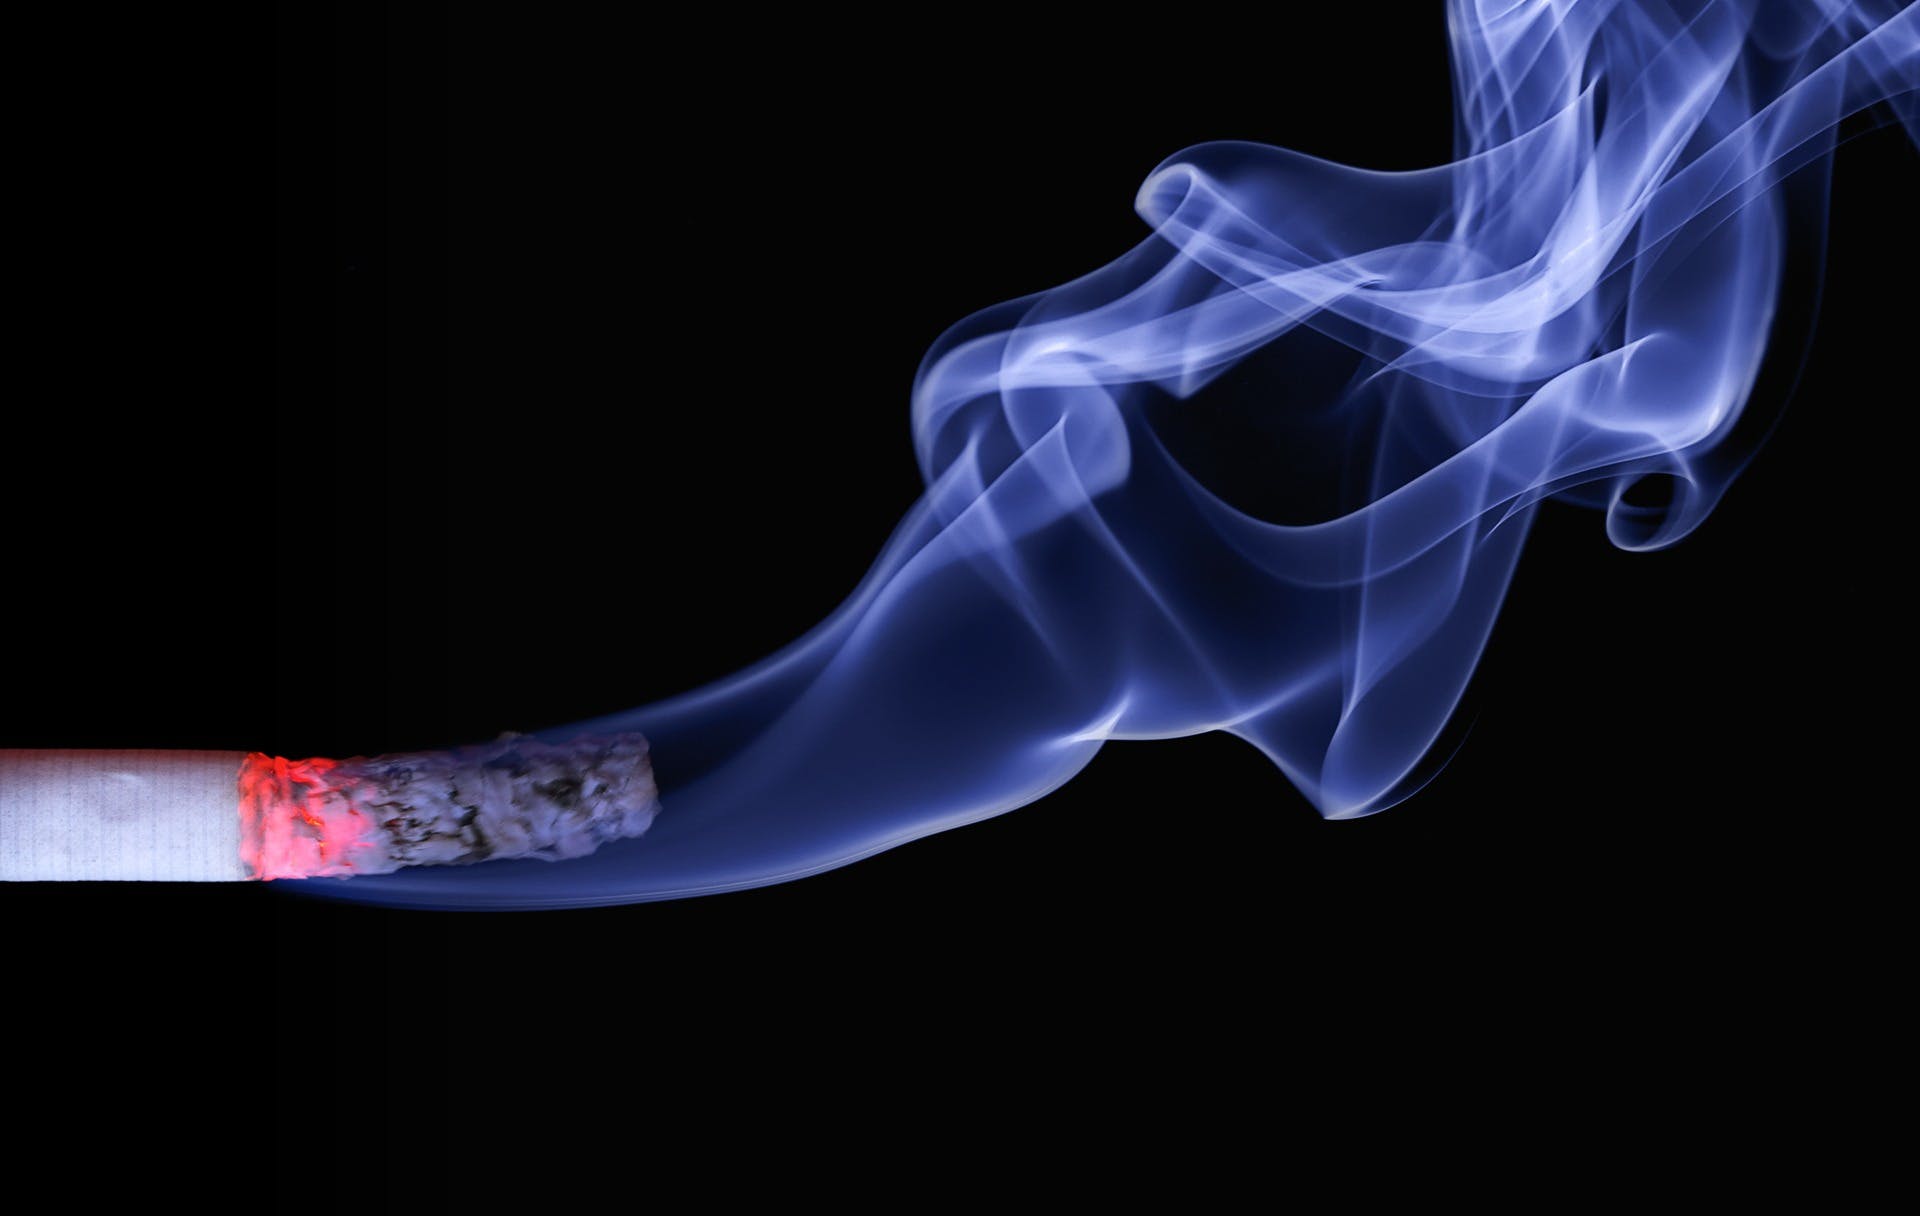 Sigarette al Fentanyl, il nuovo trend mortale che spopola negli Usa